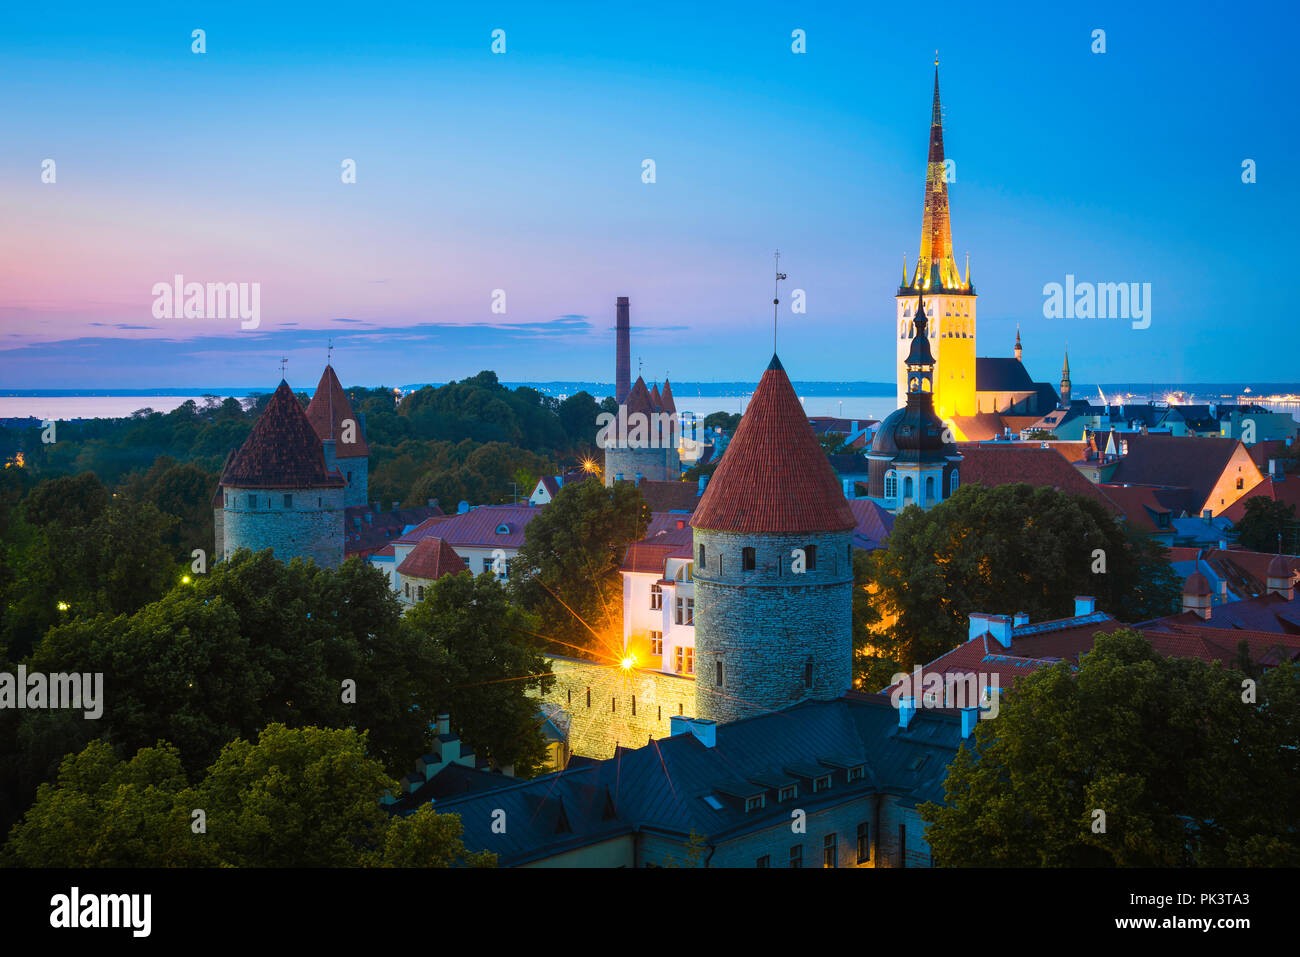 Tallinn, vue nocturne du quartier médiéval de la Basse-ville avec l'église Saint OLAF illuminée au loin, Tallinn, Estonie. Banque D'Images